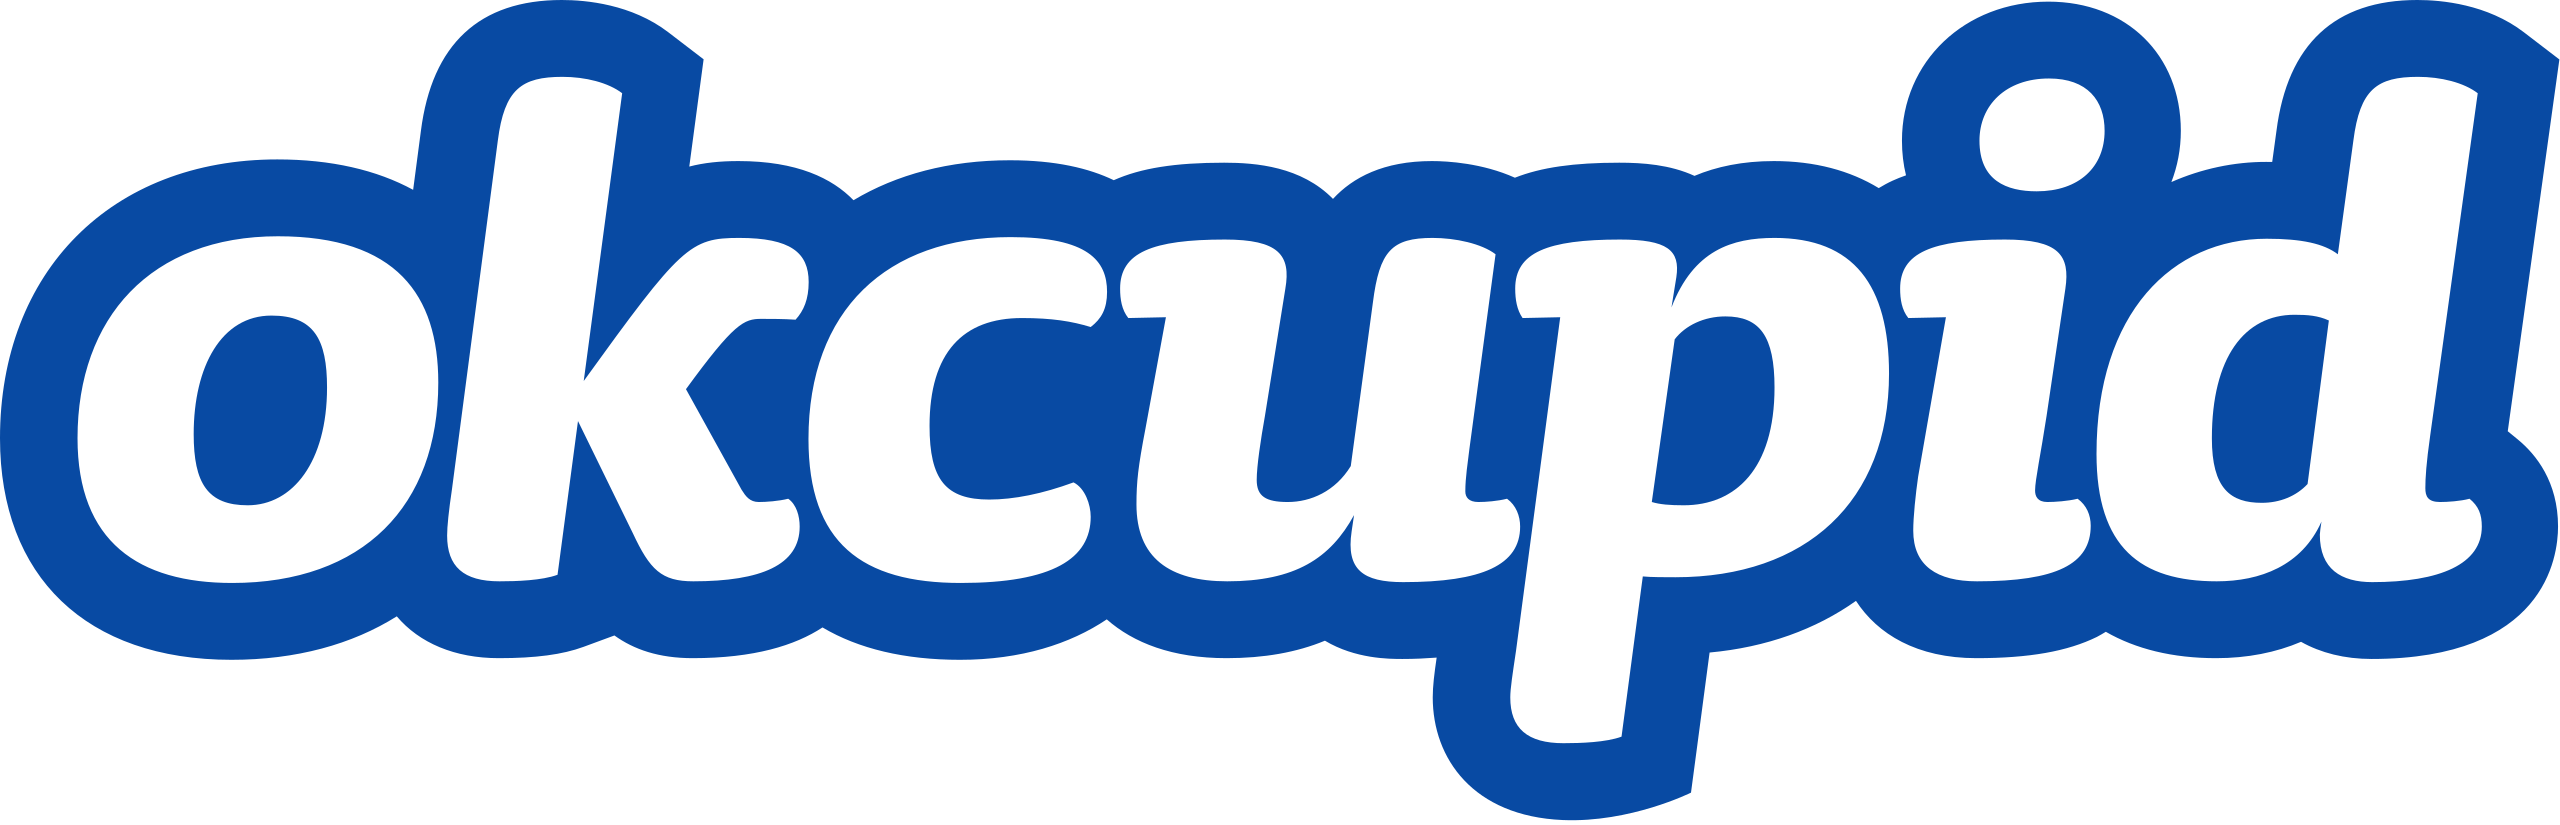 OkCupid Dating logo